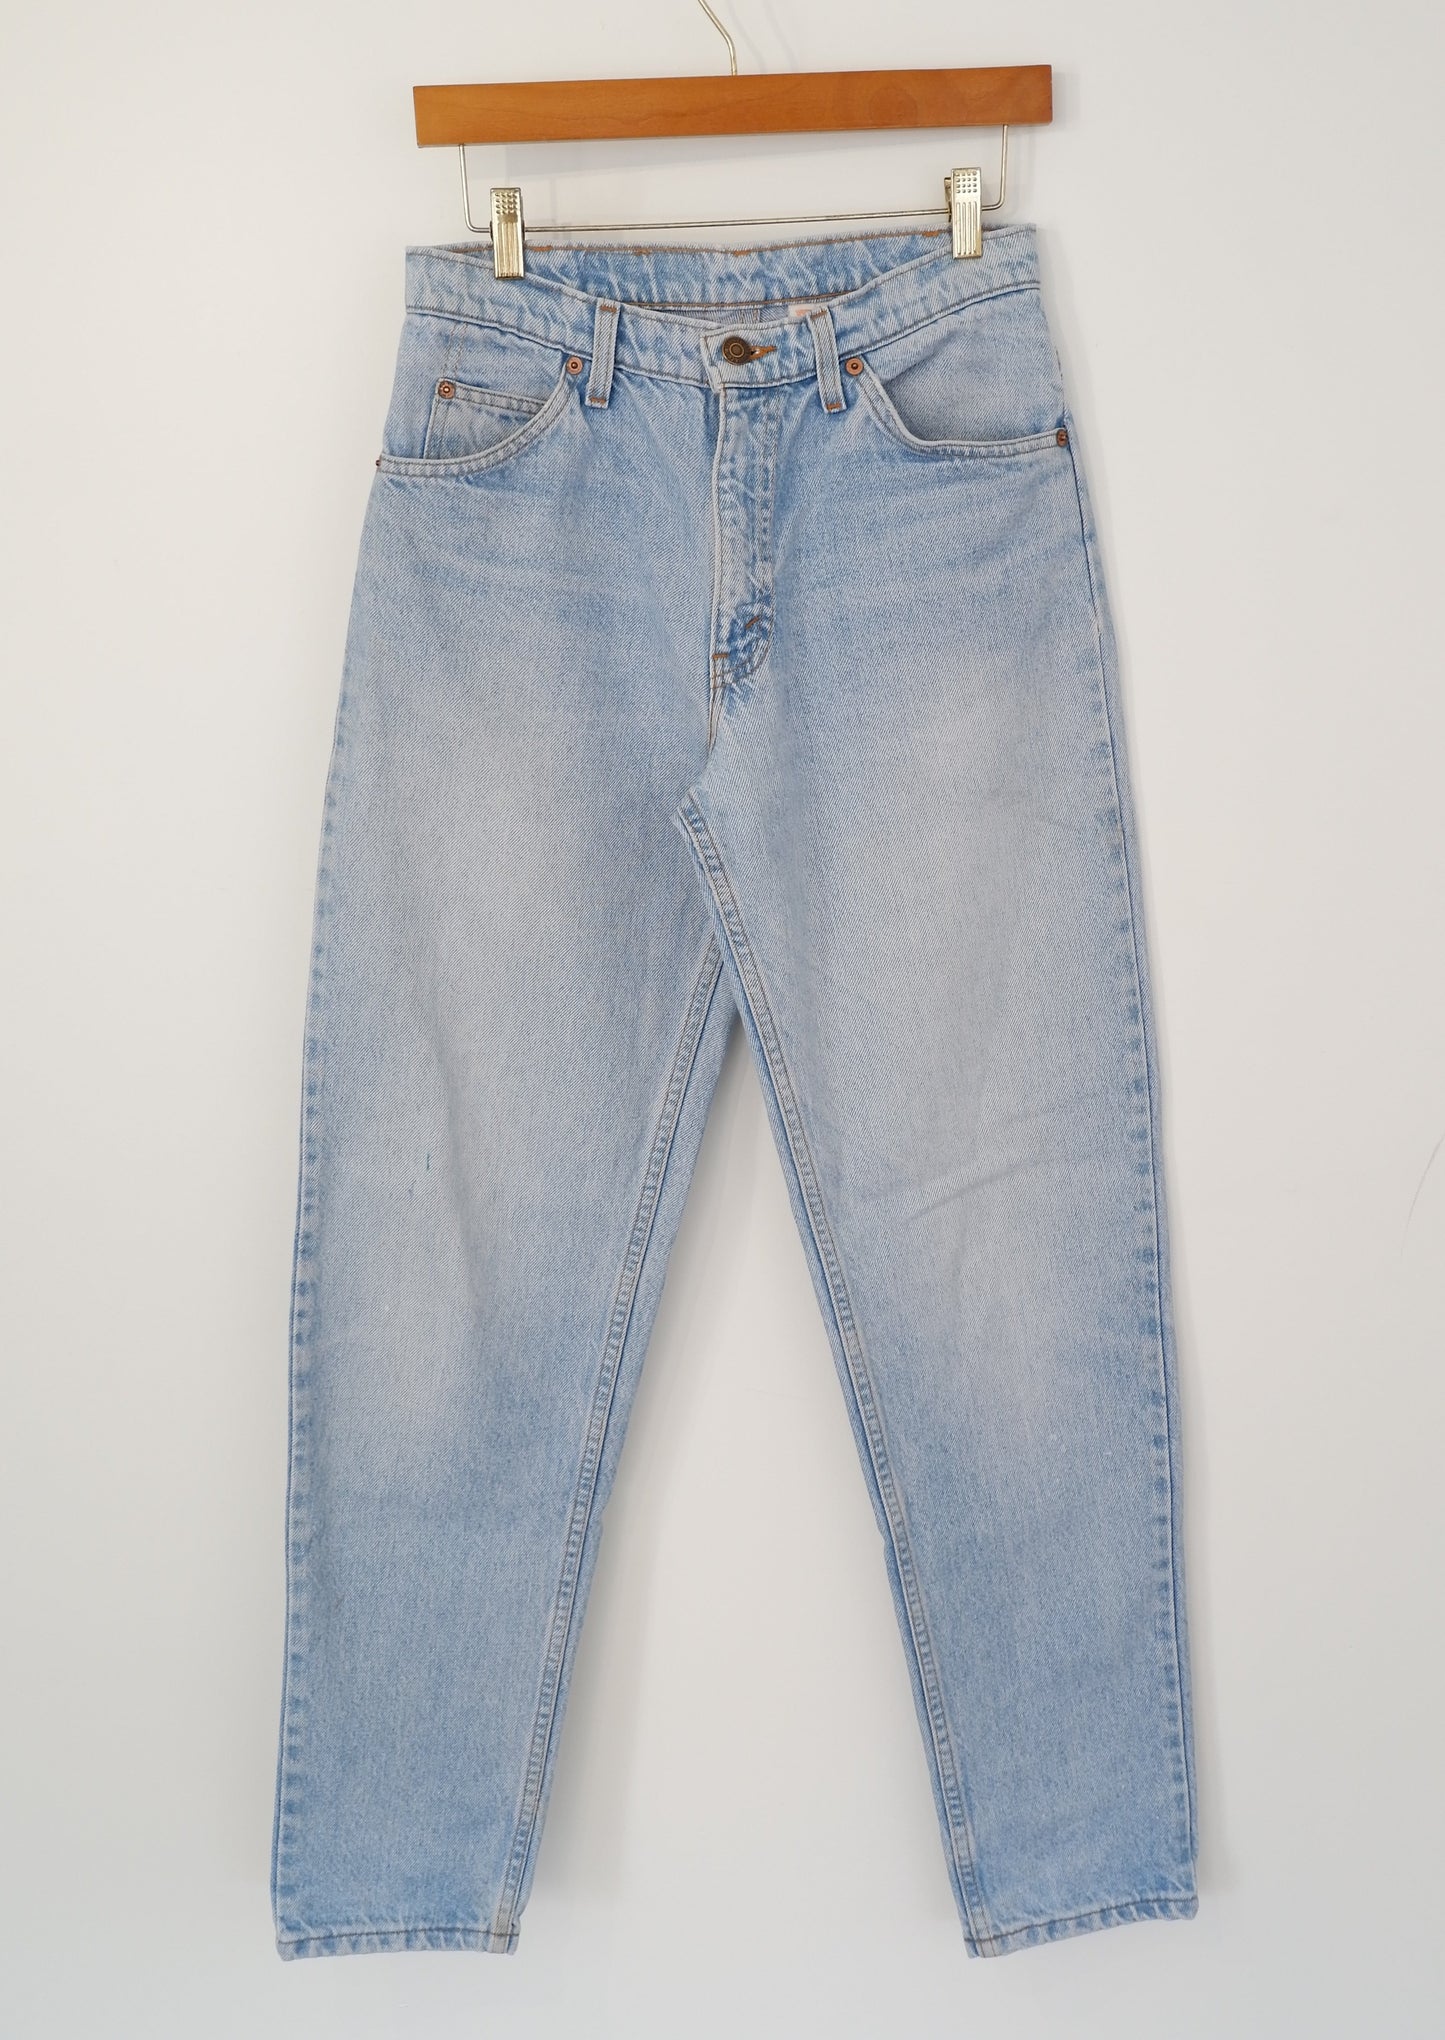 Levis Vintage 550 Light Wash Tapered Leg Jeans - 28